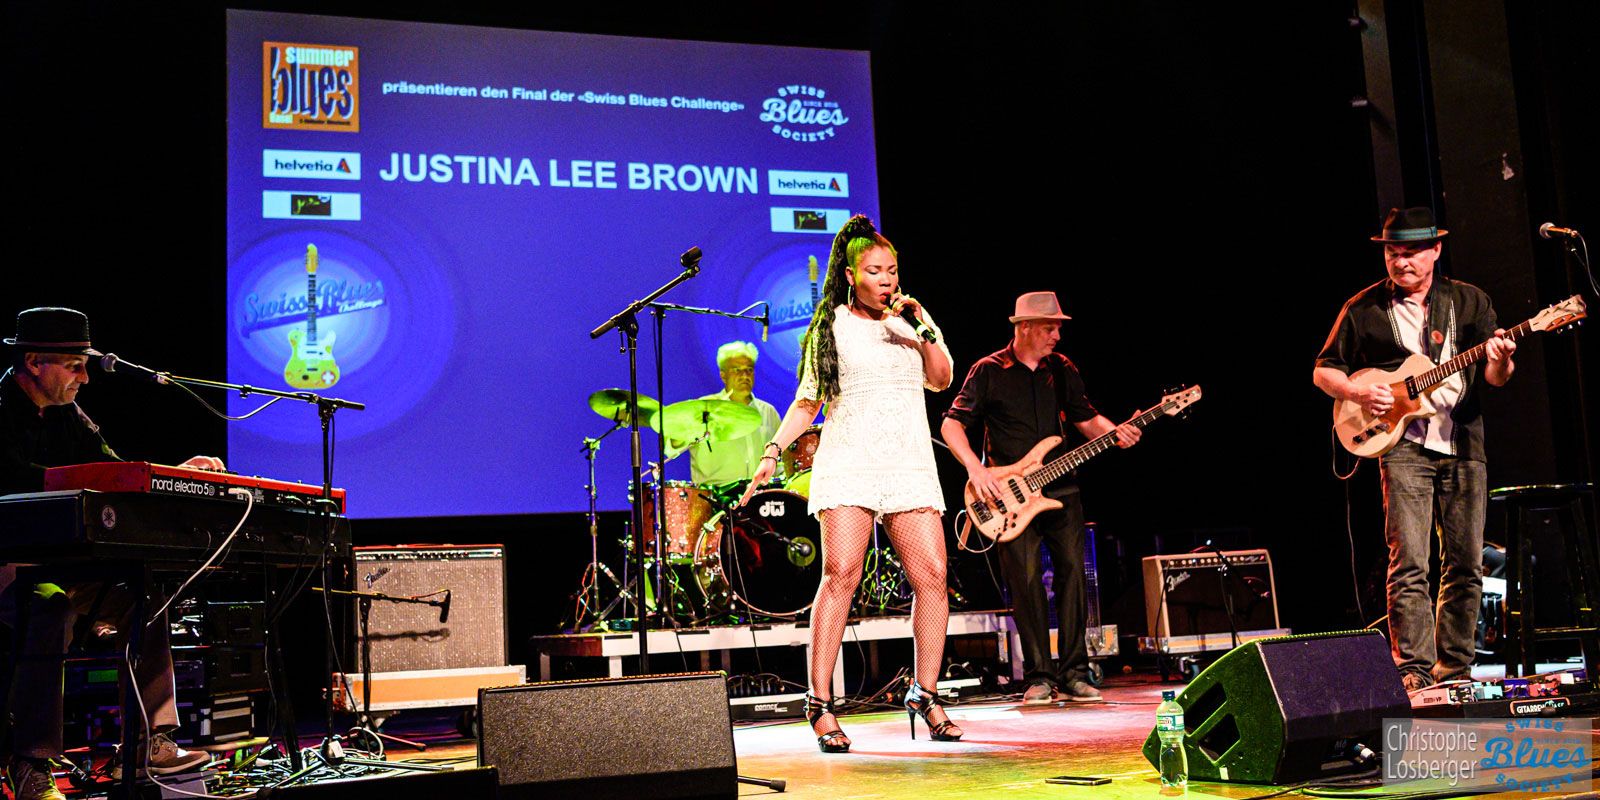 Justina Lee Brown gewinnt die Swiss Blues Challenge 2019! 